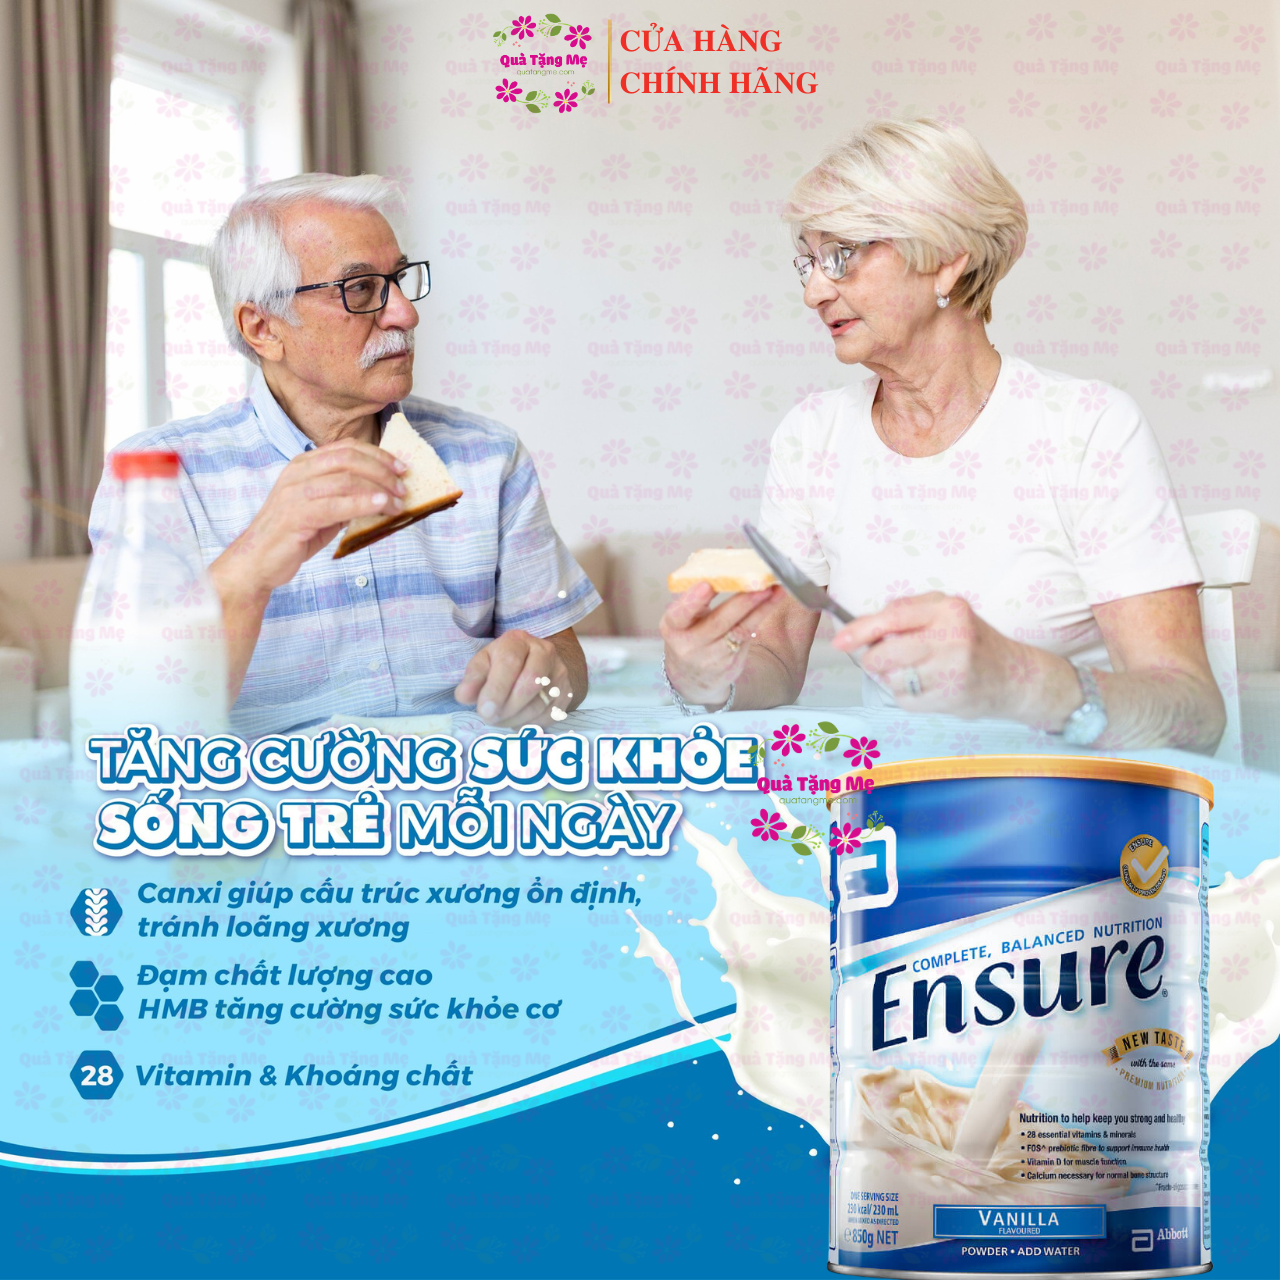 Hình ảnh Sữa Ensure Úc hồi phục sức khỏe cho người già, người ốm yếu, suy dinh dưỡng, người sau phẫu thuật - QuaTangMe Extaste